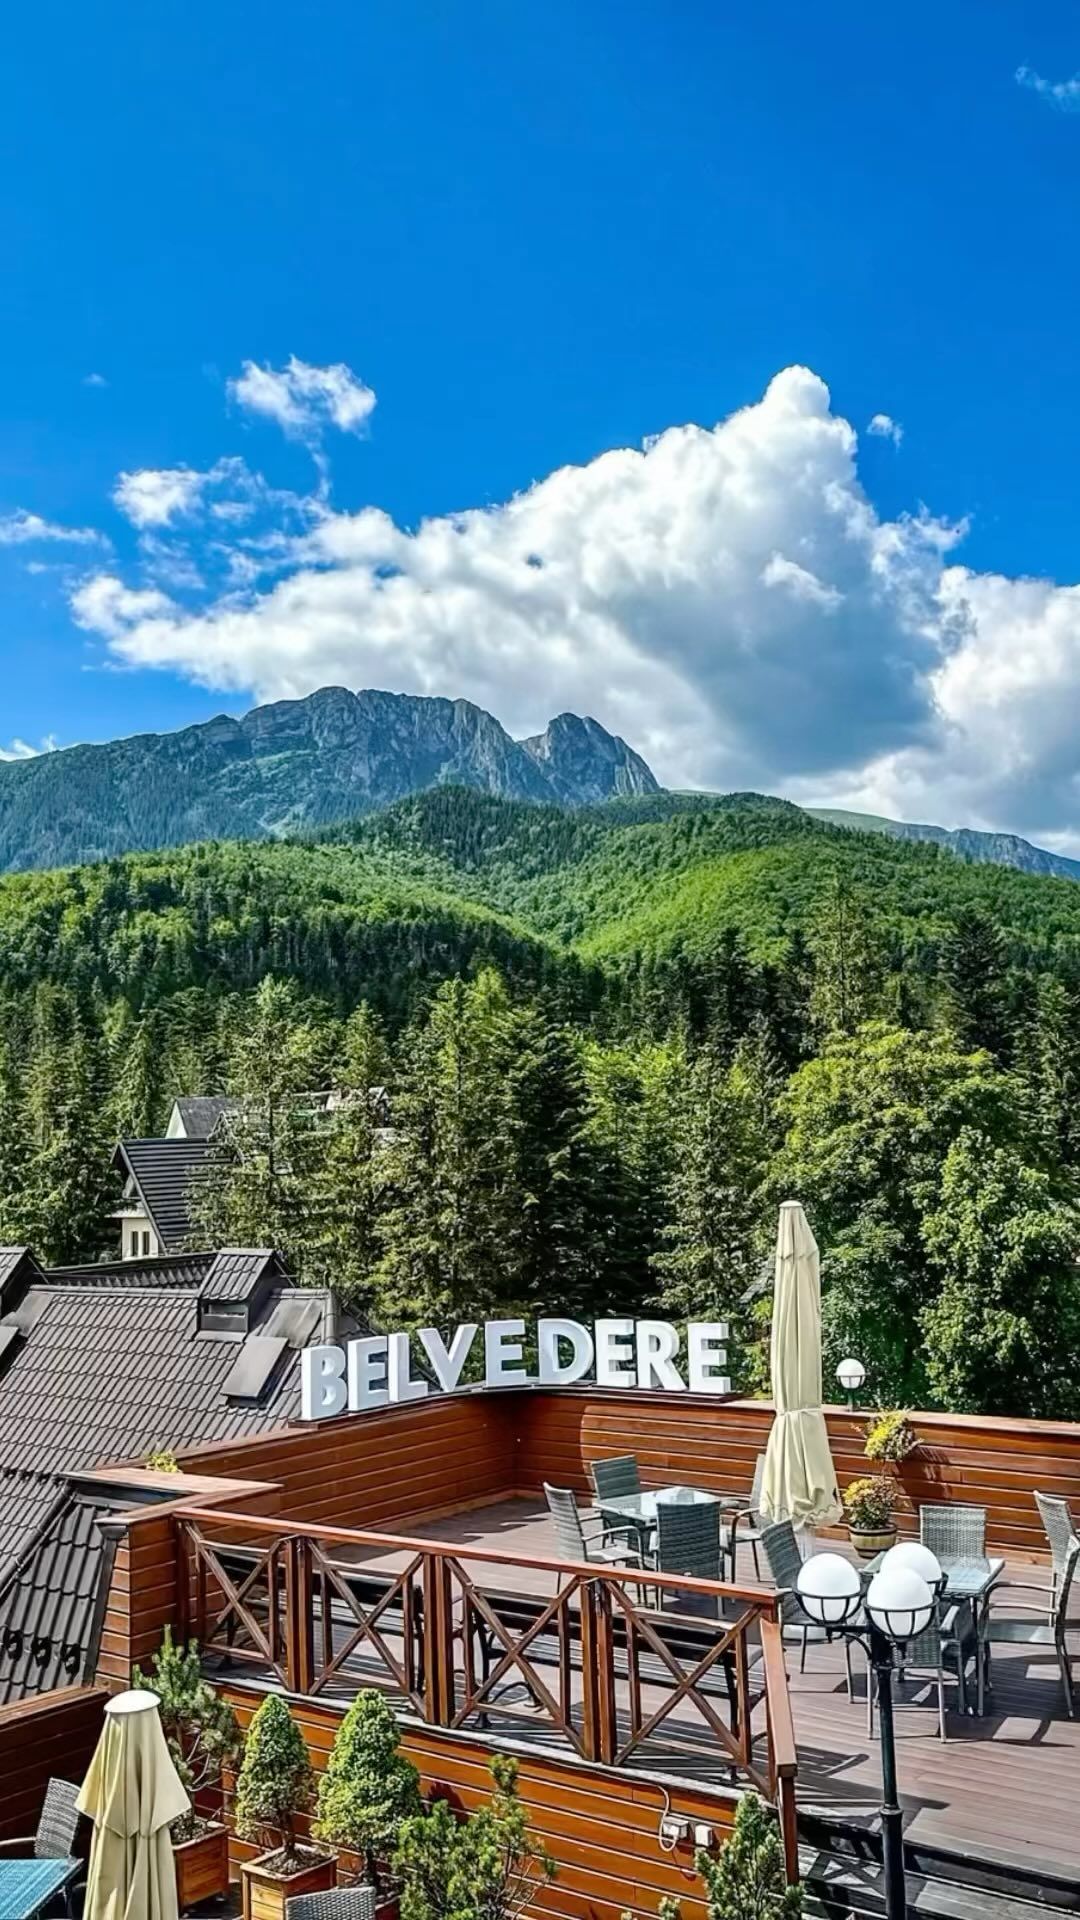 🔥Upolujcie jeszcze taniej pobyt w tym 4* hotelu u wrót tatrzańskiej doliny.
Link do oferty w BIO ➡️ @Travelist.pl  #widoknagóry #mountainview #viewpoint #hotel #belvedere #zakopane #tatry #giewont #GwarancjaNajlepszejCenynaTravelist #belvederehotel @hotelbelvederezakopane #tatry 
 #alertsuperceny